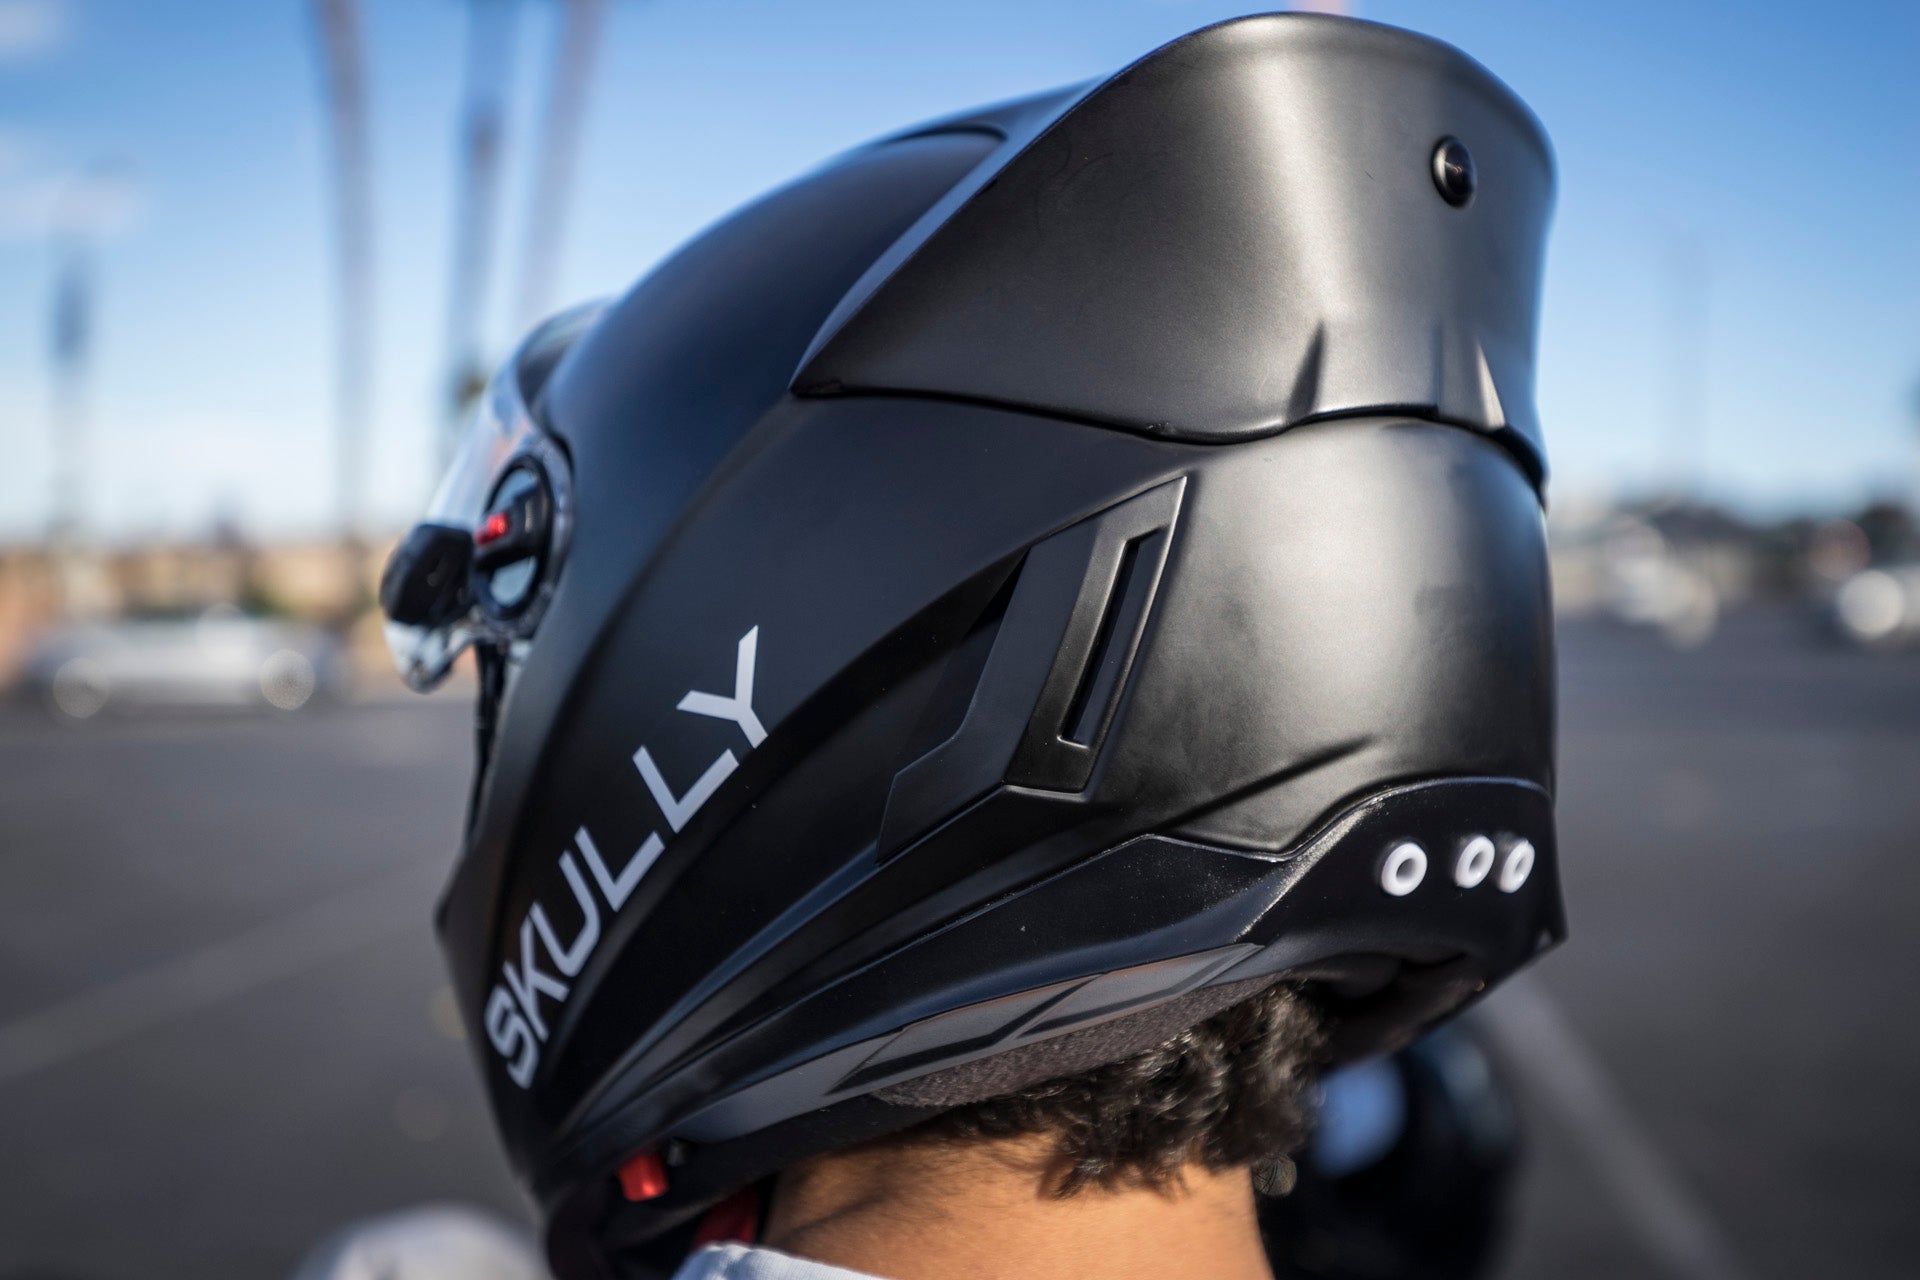 Skully AR-1 Helmet Hands-On: The World's First HUD Motorcycle Helmet